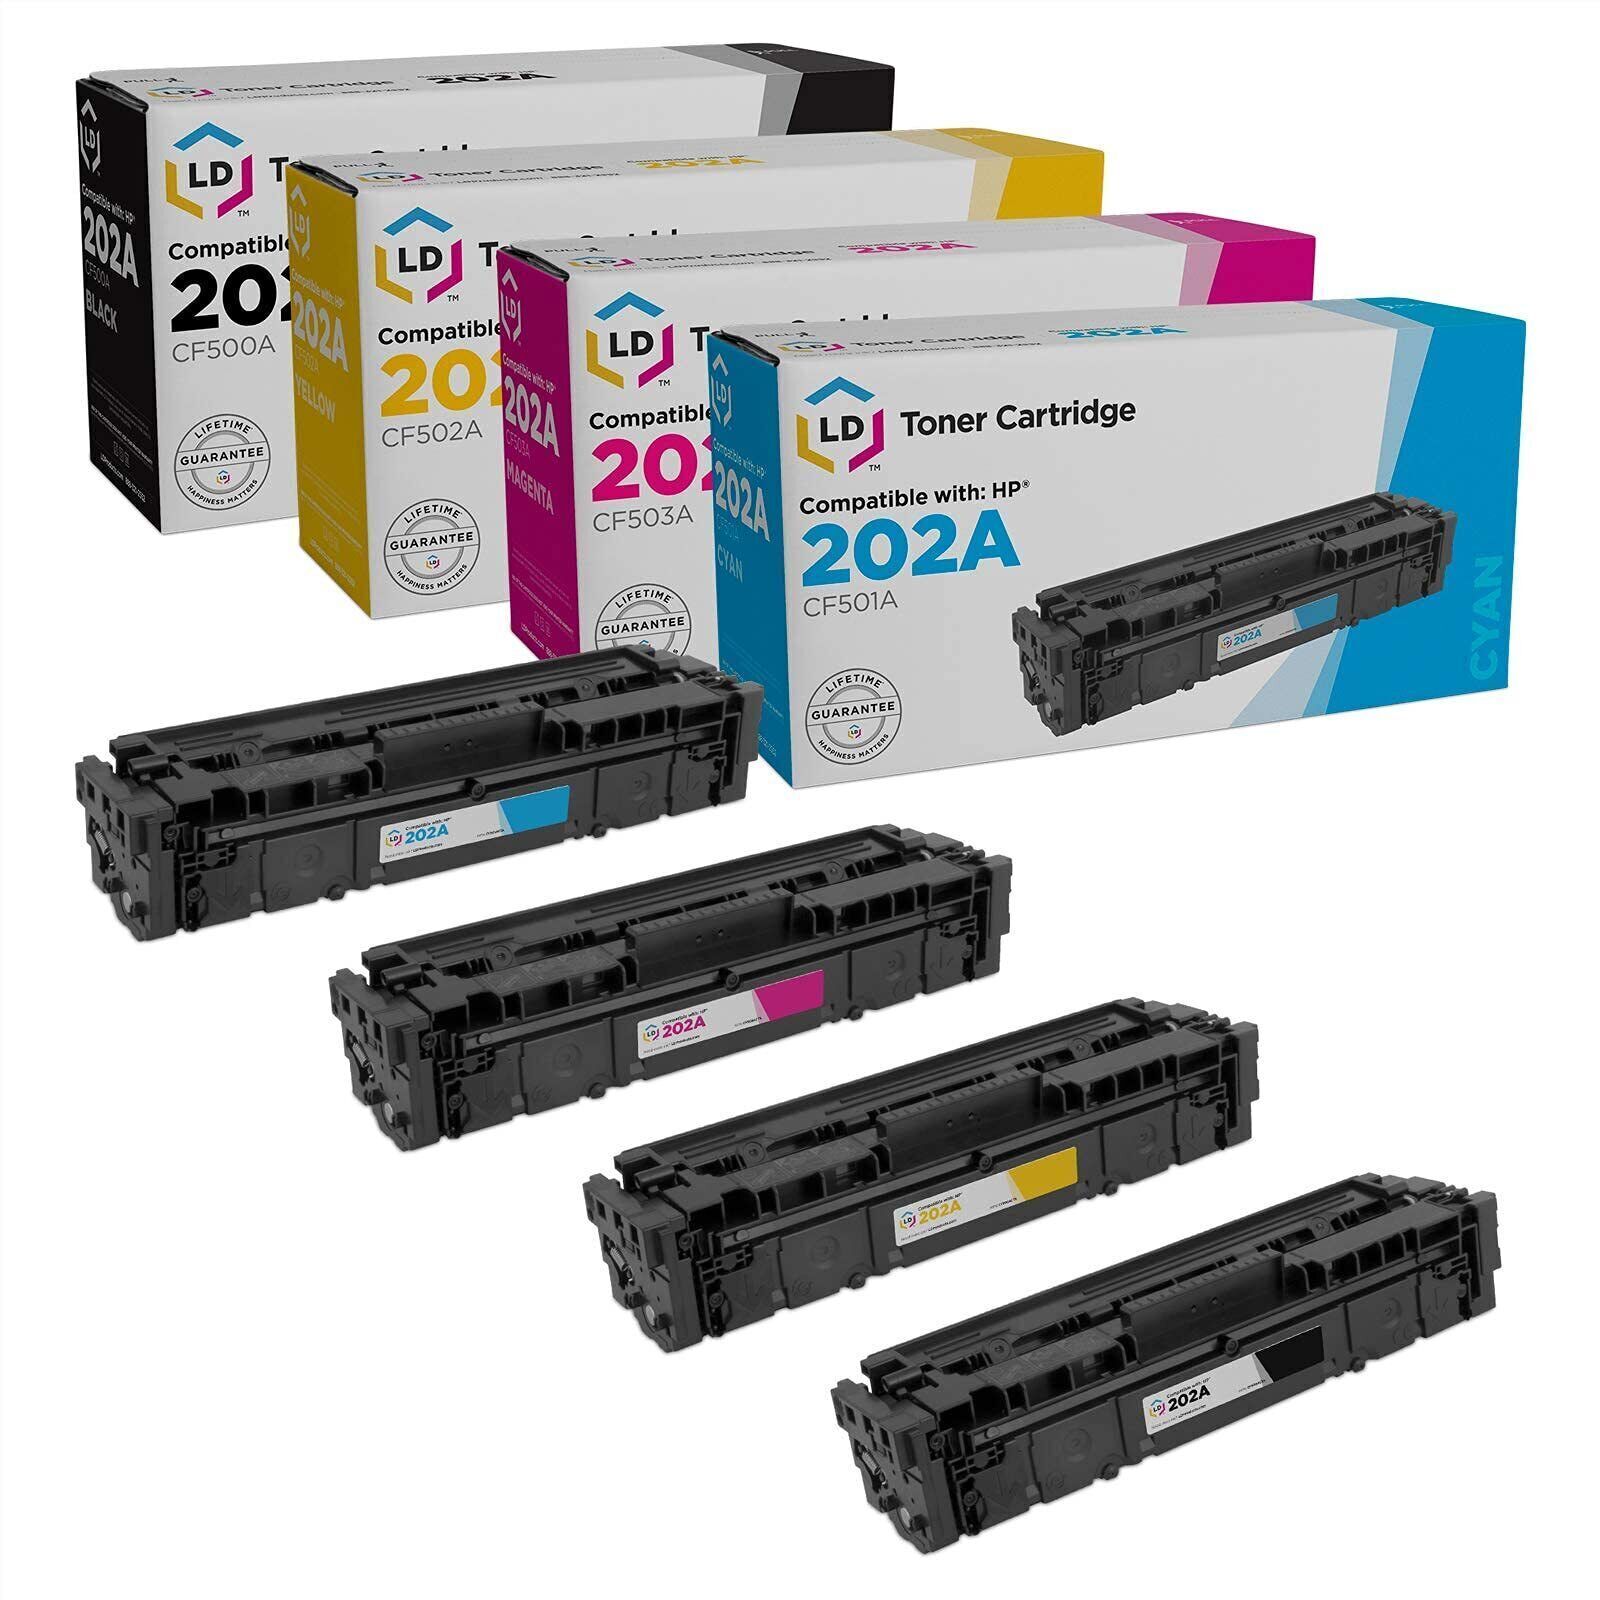 LD 4pk Comp Cartridge Fits for HP Toner 202A CF500A CF501A CF502A CF503A M254dw